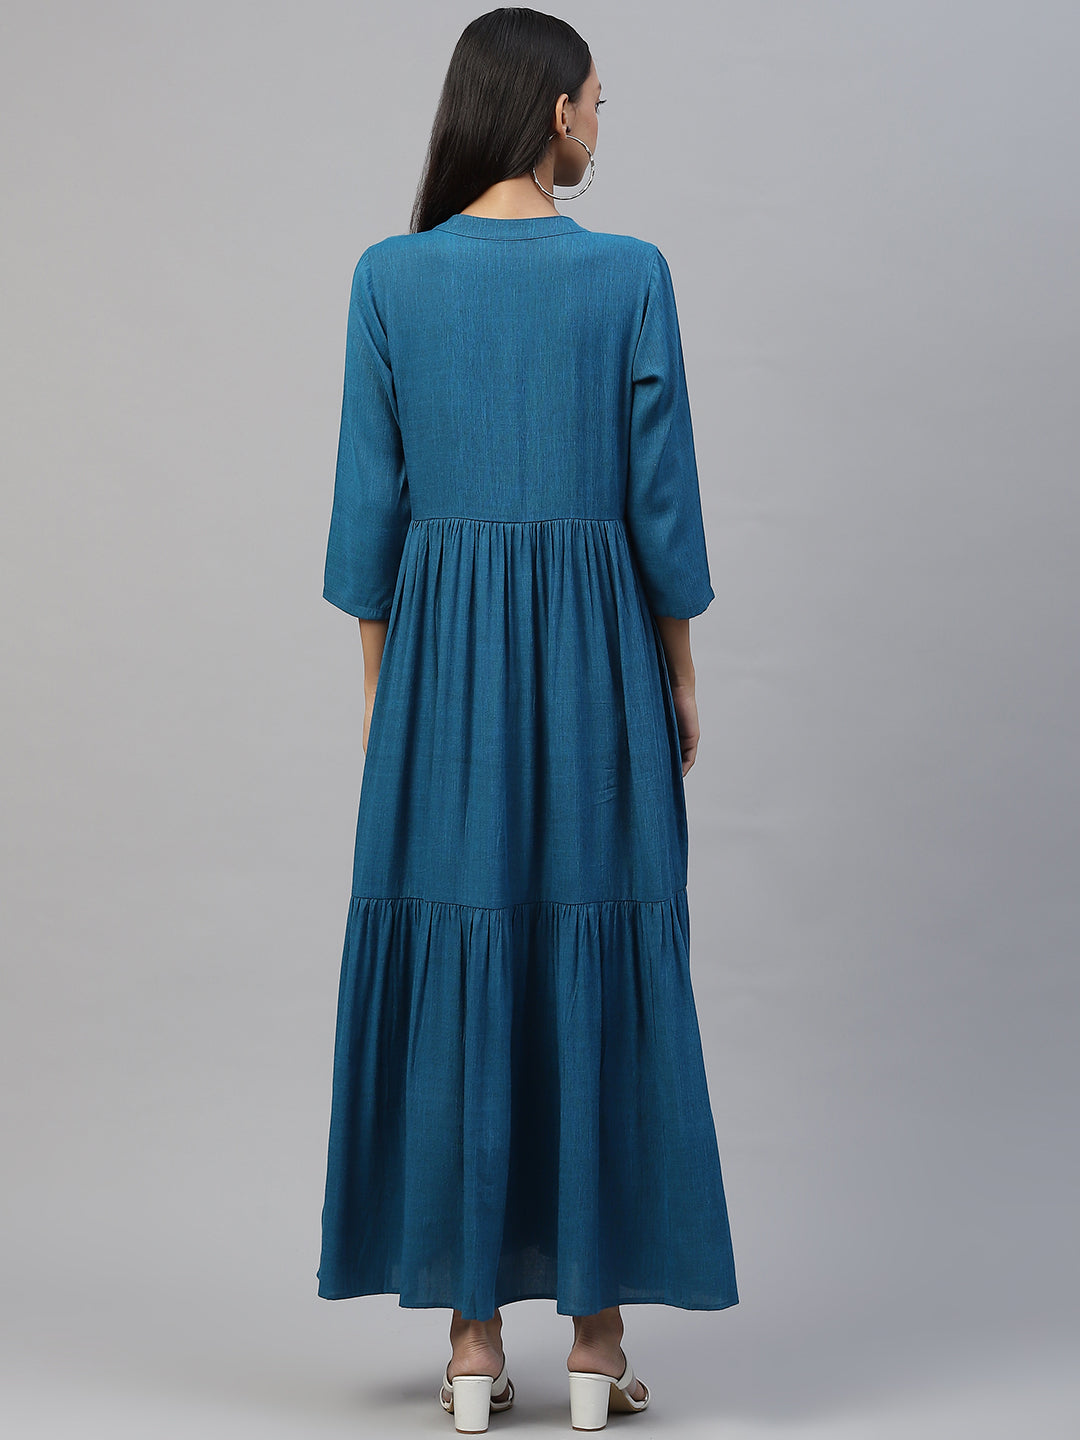 Cottinfab Blue Solid Tiered Maxi Dress